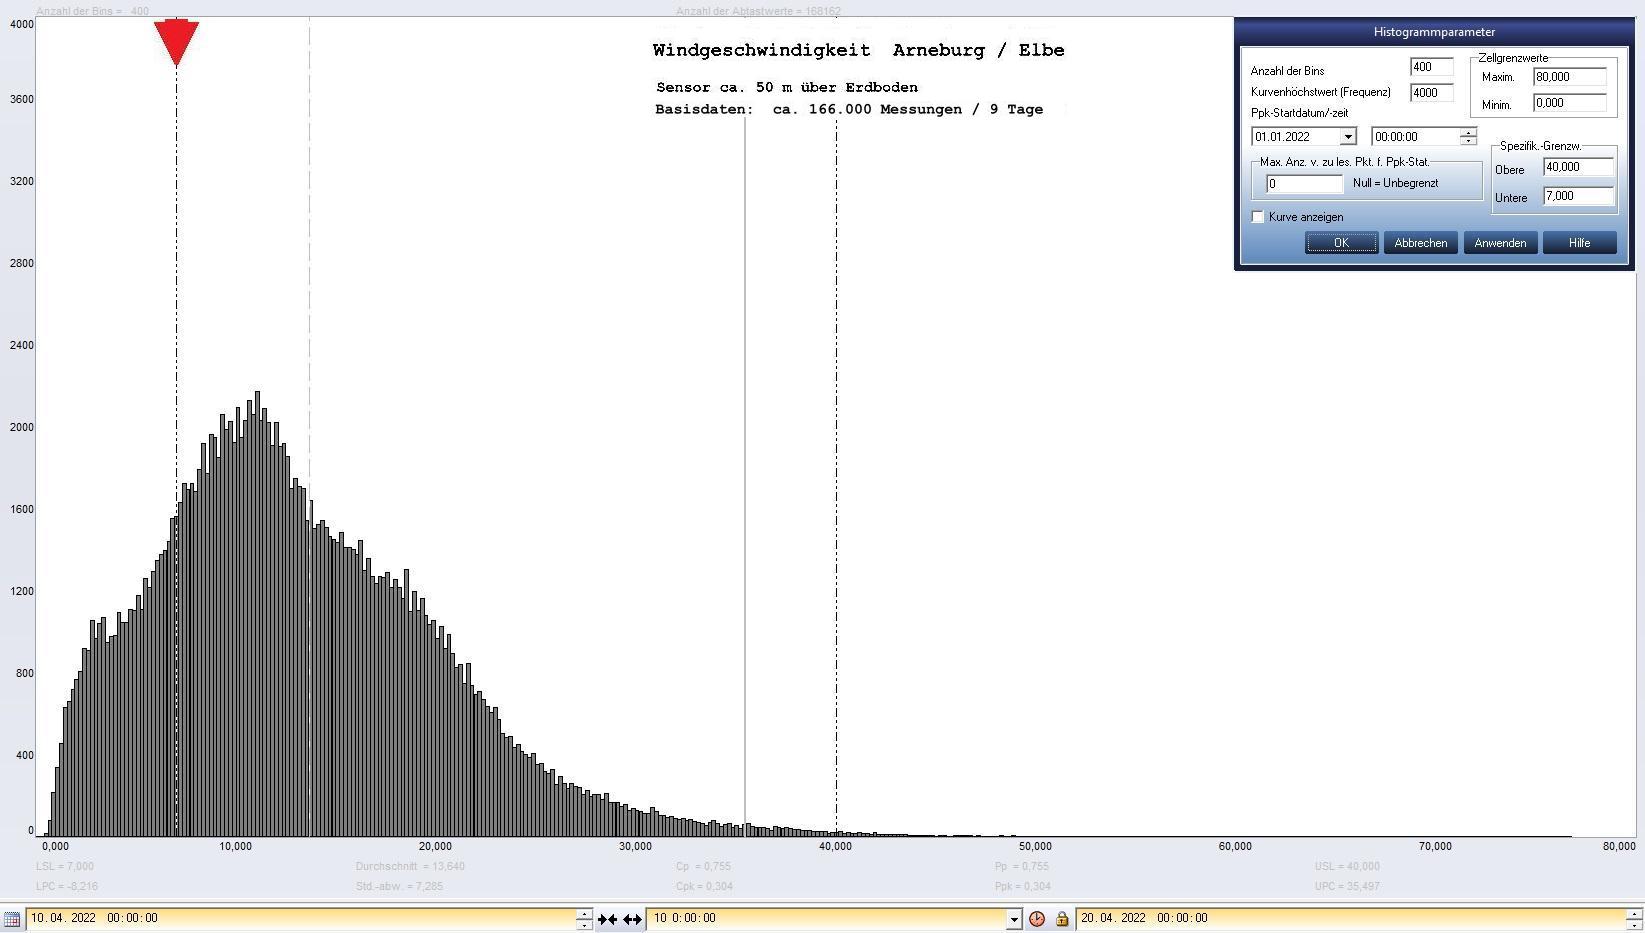 Arneburg 9 Tage Histogramm Winddaten, ab 10.04.2022 
  Sensor auf Gebude, ca. 50 m ber Erdboden, Basis: 5s-Aufzeichnung